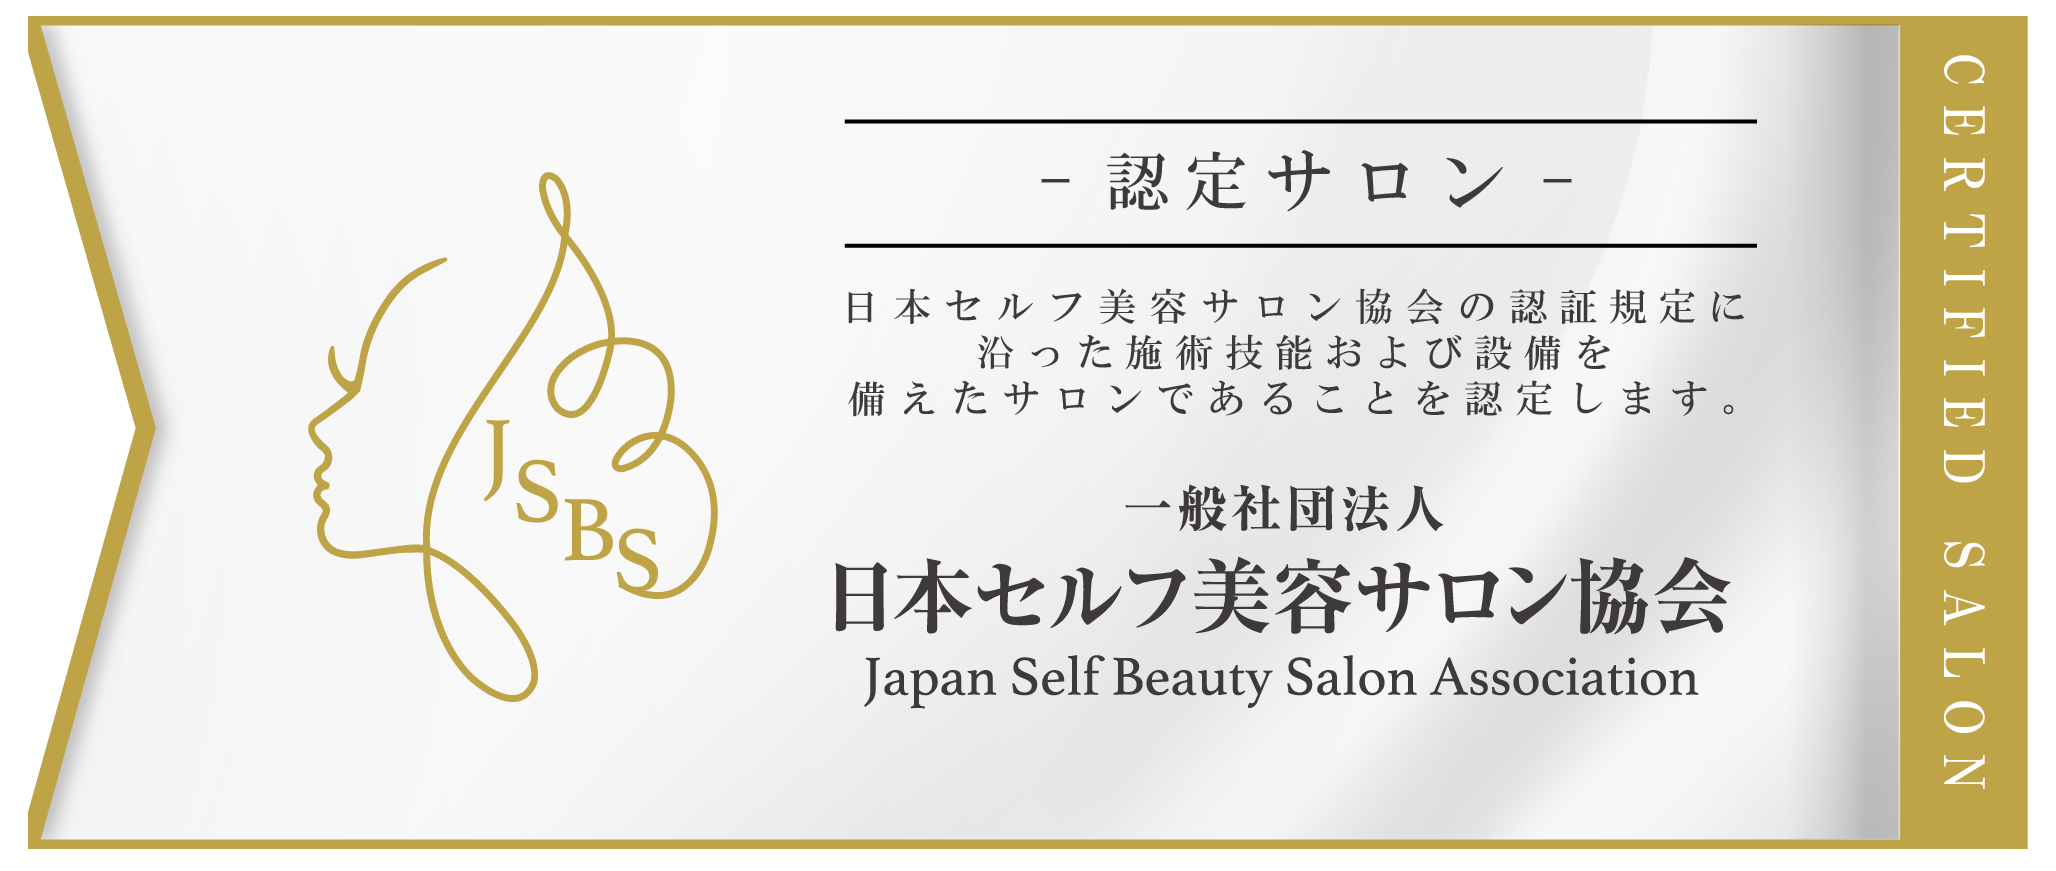 一般社団法人 日本セルフ美容サロン協会 Japan Self Beauty Salon Association